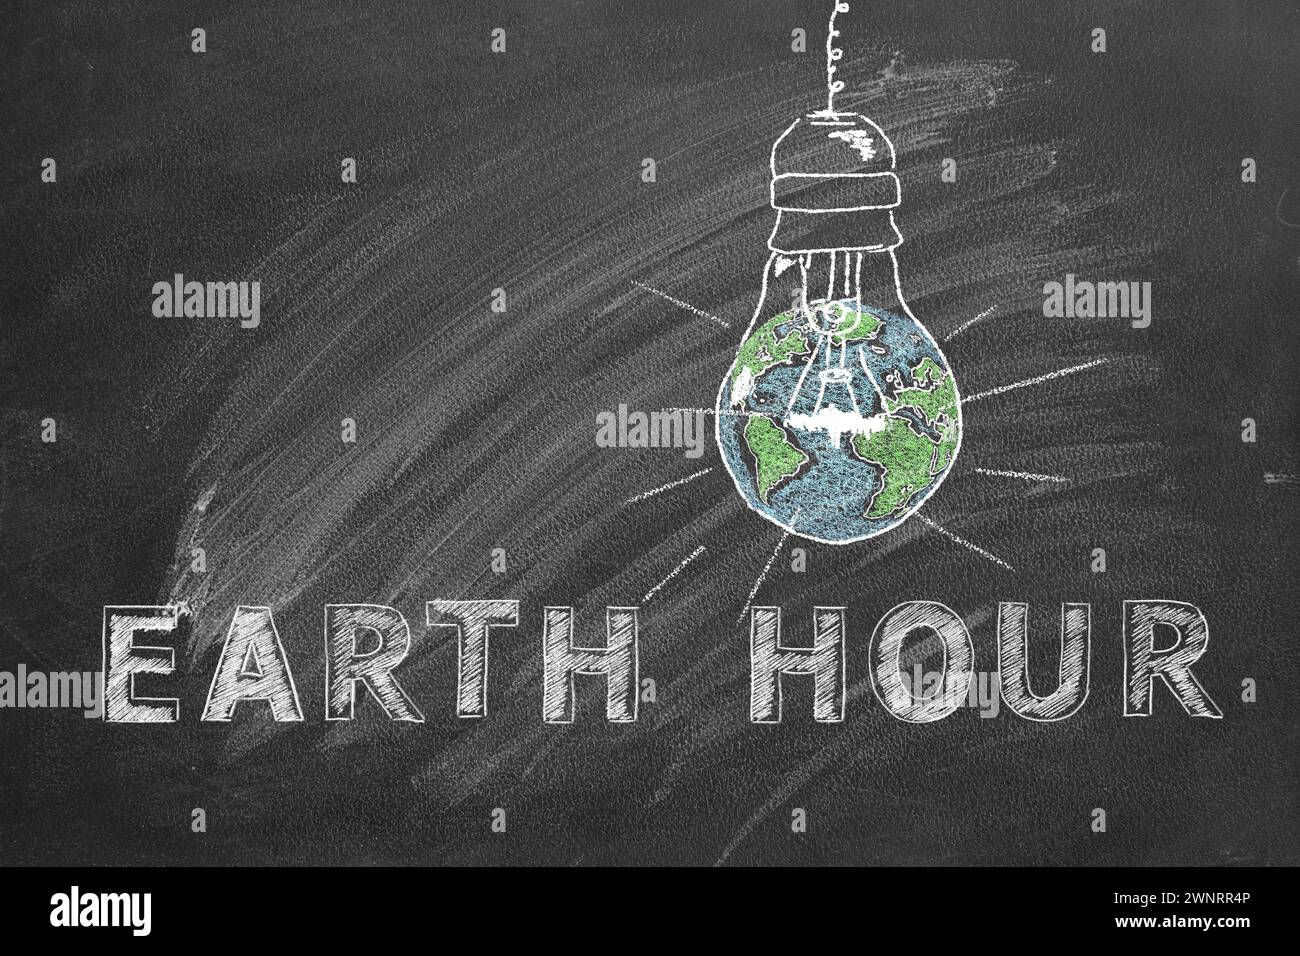 Lampadine con scritta EARTH HOUR disegnate a mano in gesso su una lavagna scolastica. Salvare il mondo. Salvate il nostro pianeta. Foto Stock